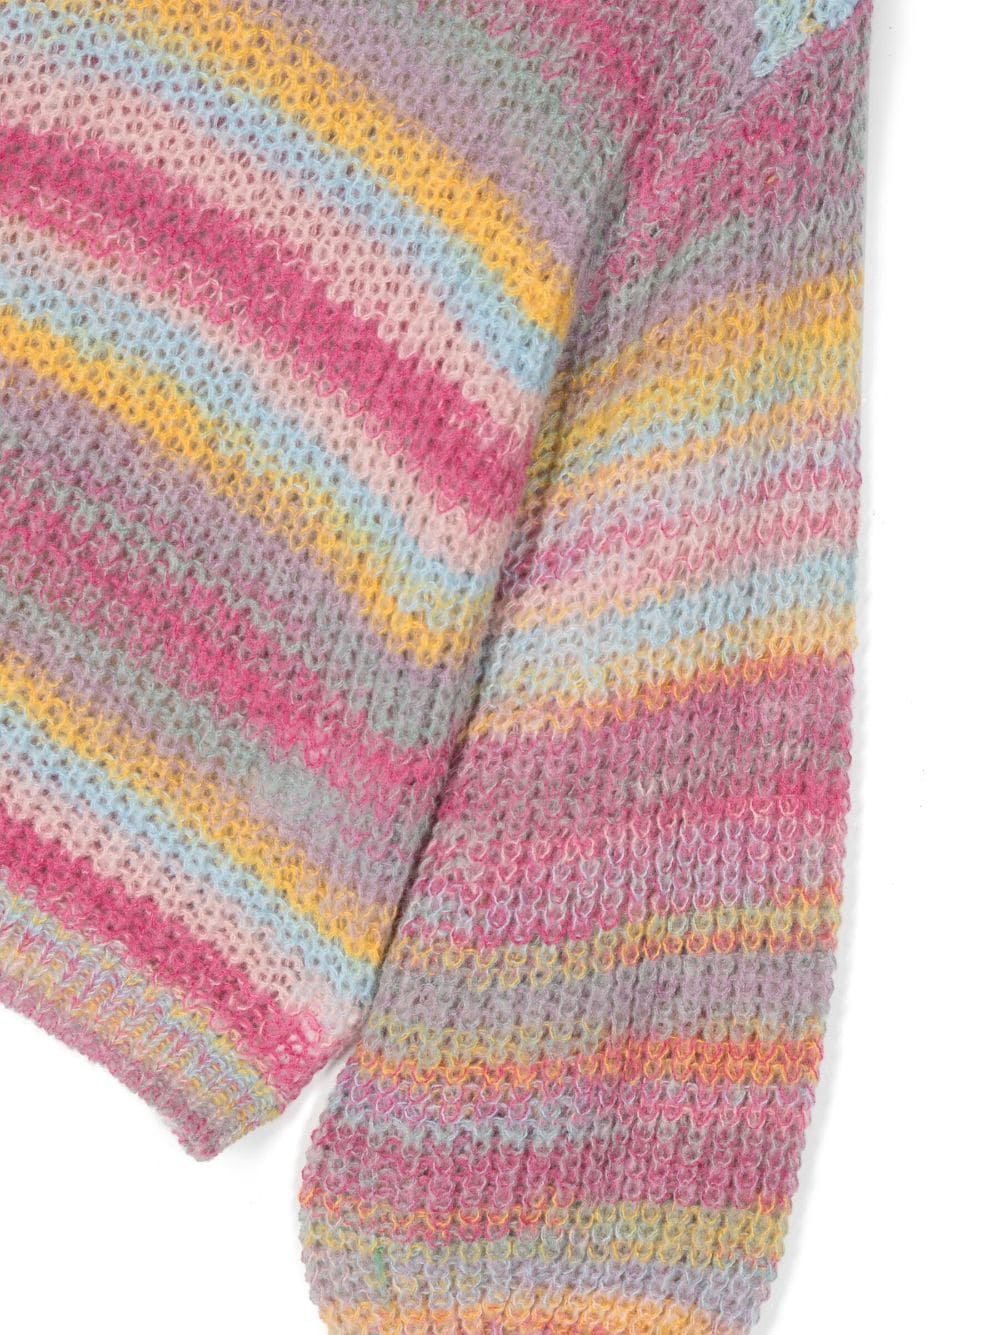 Maglione multicolore per bambina